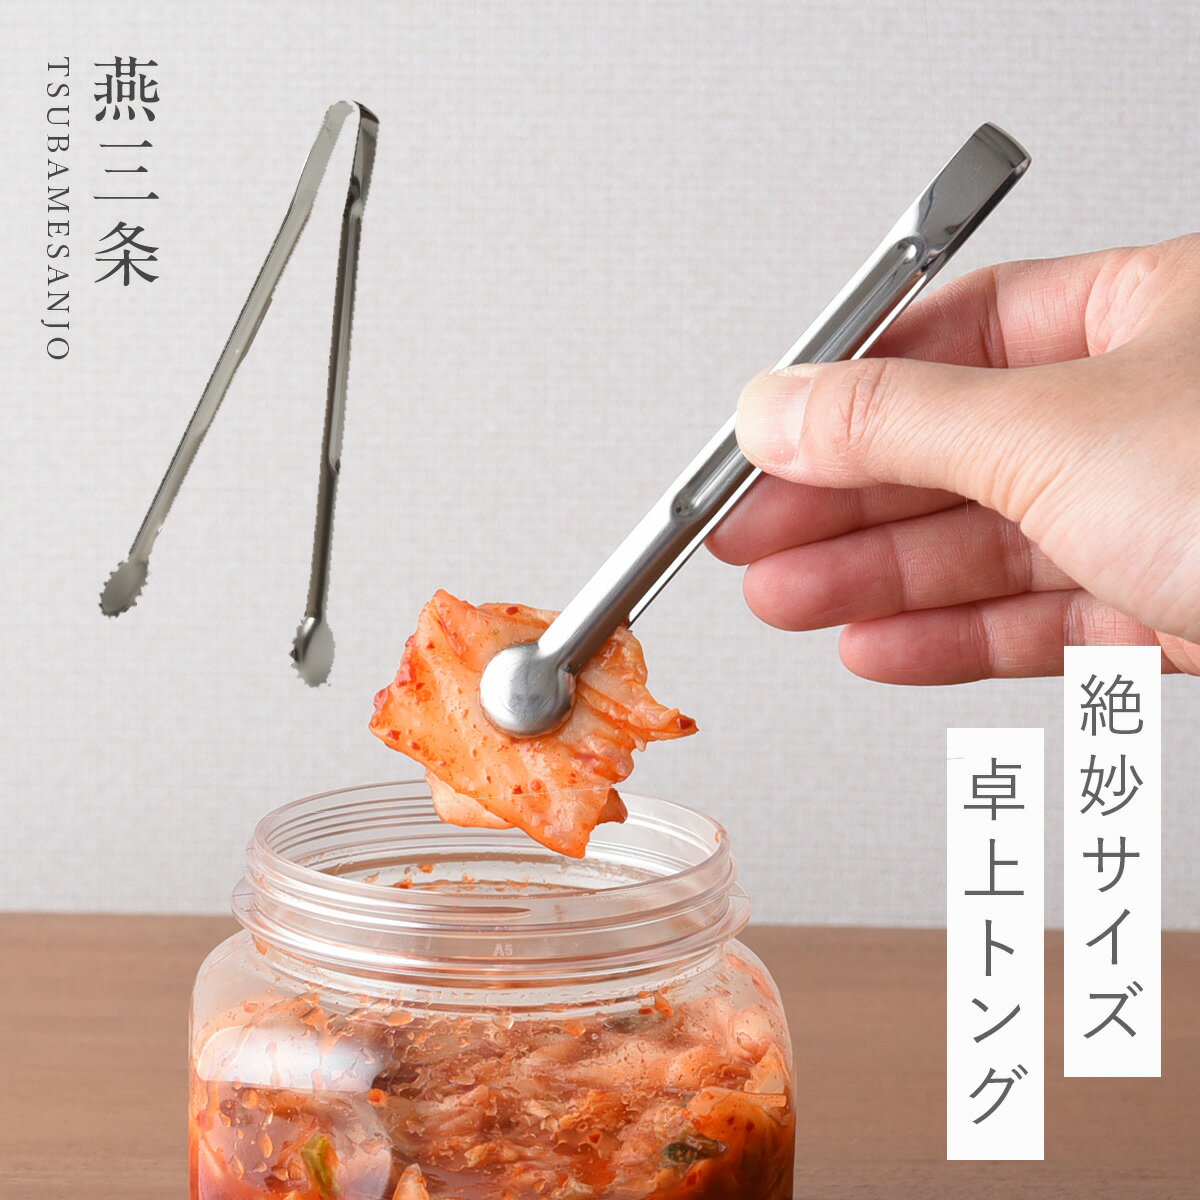 燕三条 トング ミニ ステンレス ミニトング 日本製 キッチン 調理器具 絶妙サイズの卓上トング